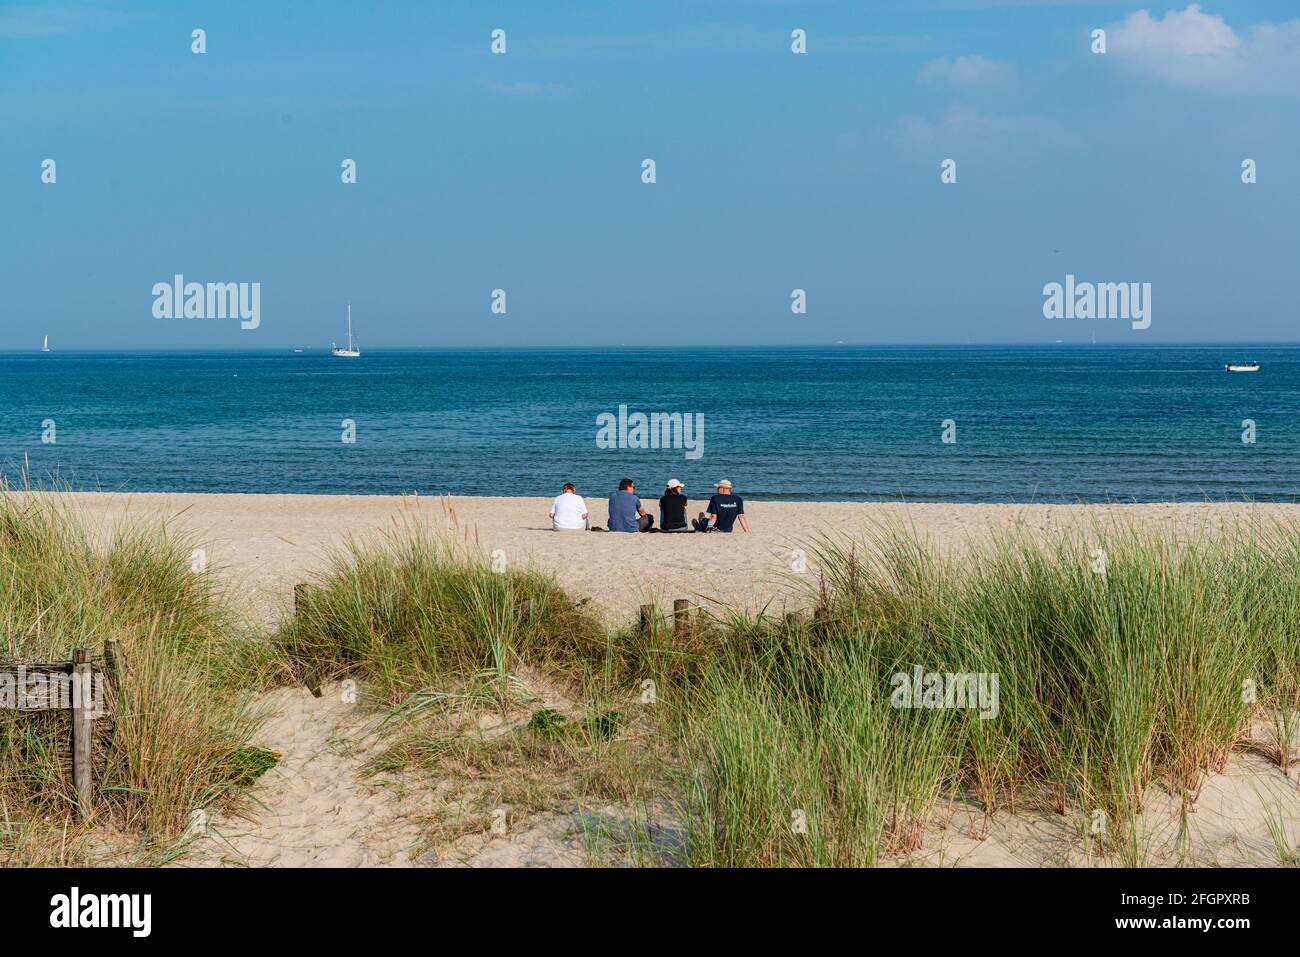 Schleswig-Holstein, April 2021 - Sommerliche Impressionen aus dem Ostseebad Damp mit Strandmotiven Stock Photo